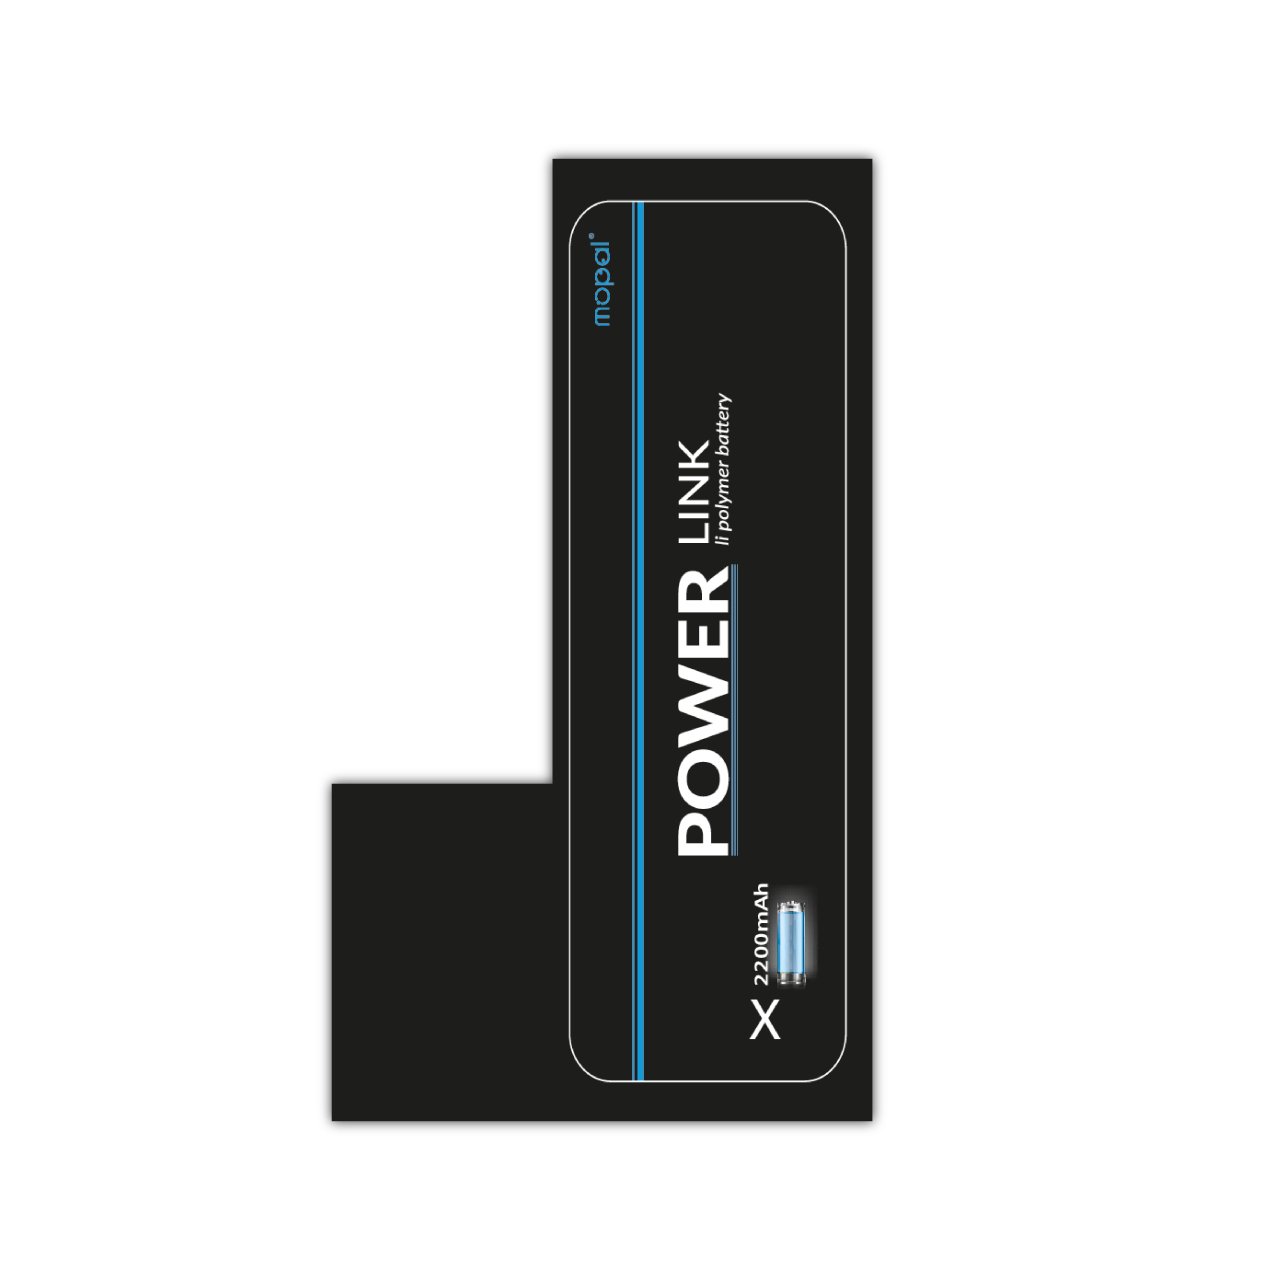 Mopal Power Link İphone X Ekstra Güçlü 2715 Mah Batarya